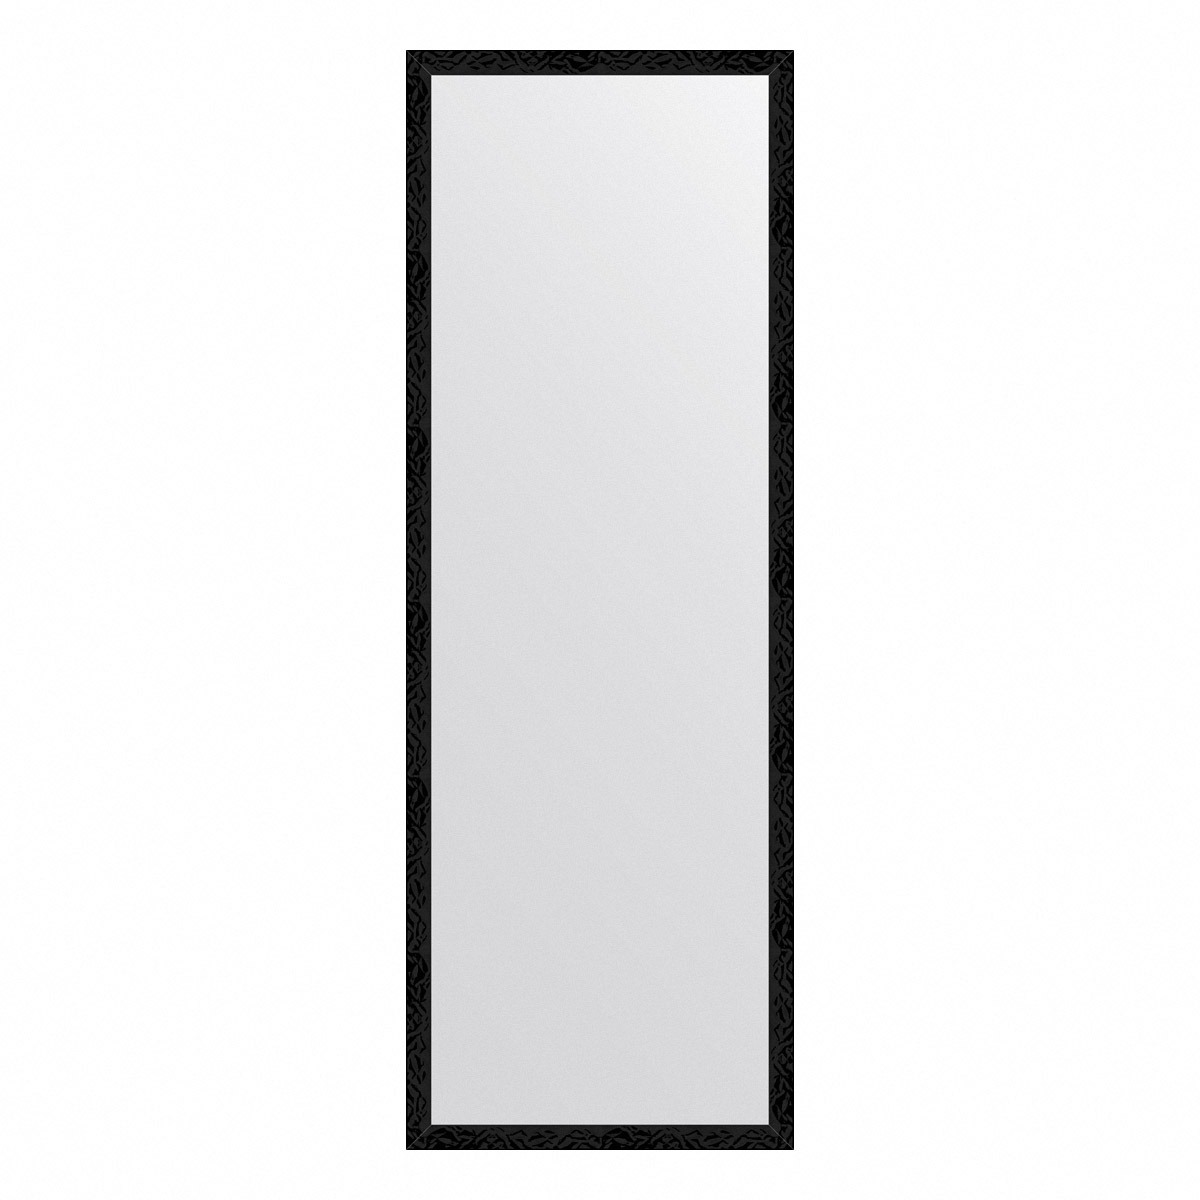 Зеркало в багетной раме Evoform черные дюны 32 мм 49х139 см зеркало в багетной раме evoform definite чёрные дюны 49х139 см bx 7483